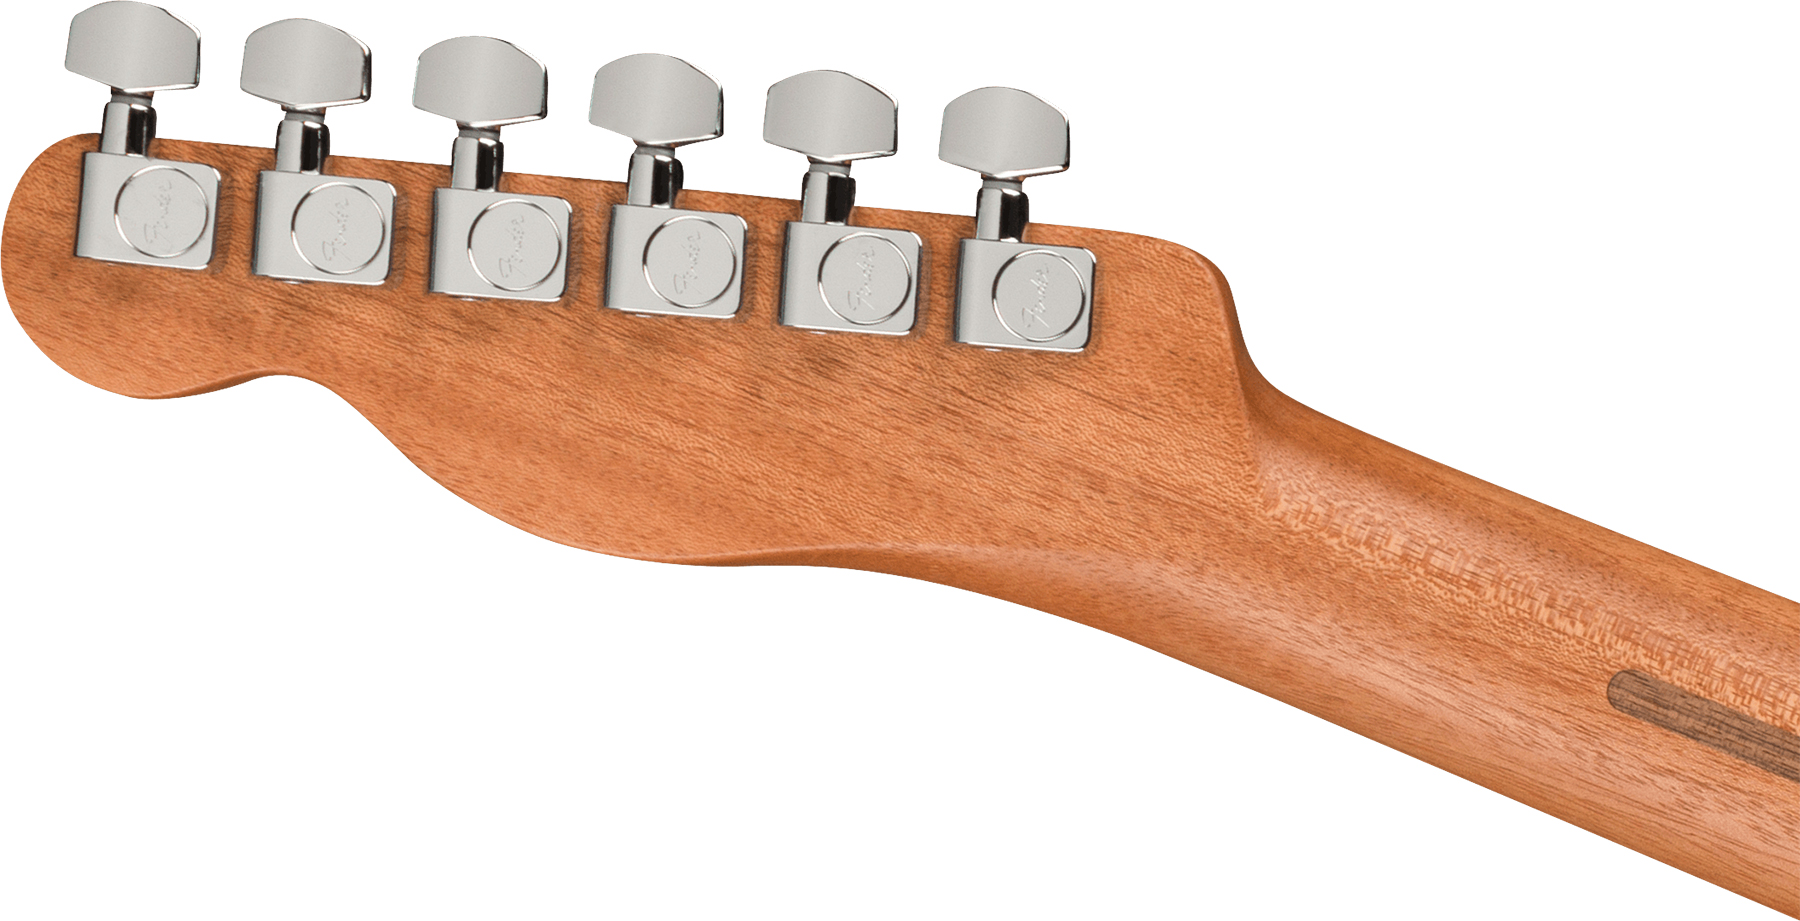 Fender Acoustasonic Tele Player Mex Epicea Acajou Rw - Arctic White - Guitare Electro Acoustique - Variation 3